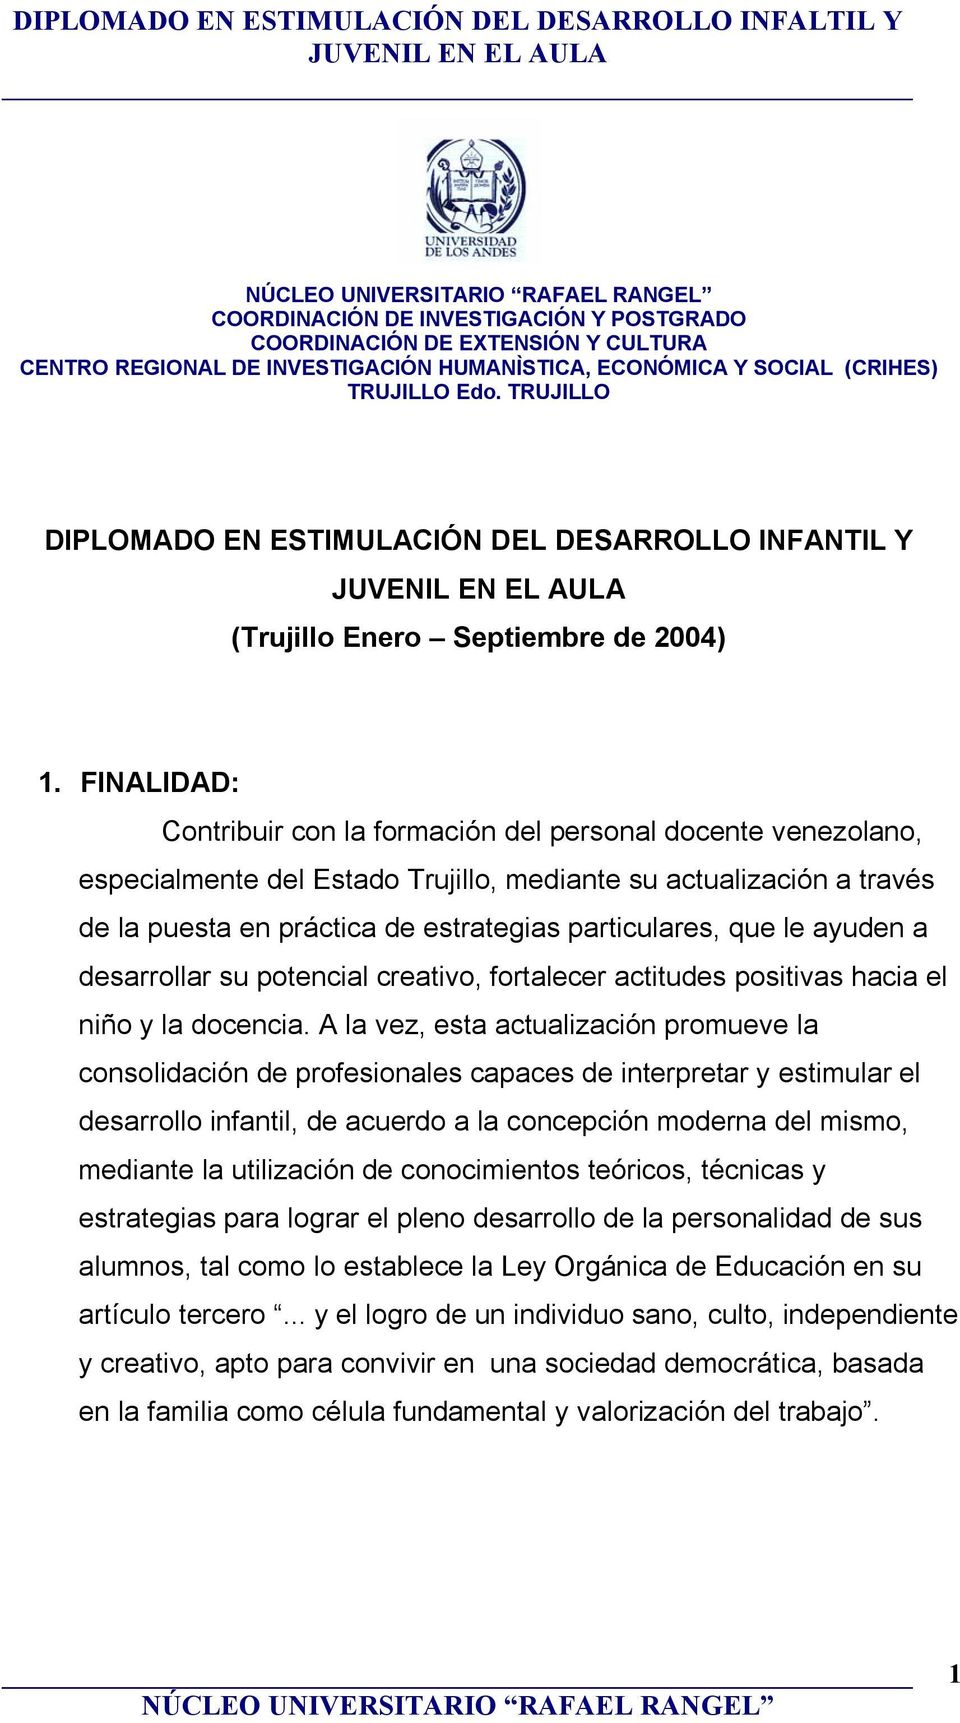 FINALIDAD: Contribuir con la formación del personal docente venezolano, especialmente del Estado Trujillo, mediante su actualización a través de la puesta en práctica de estrategias particulares, que